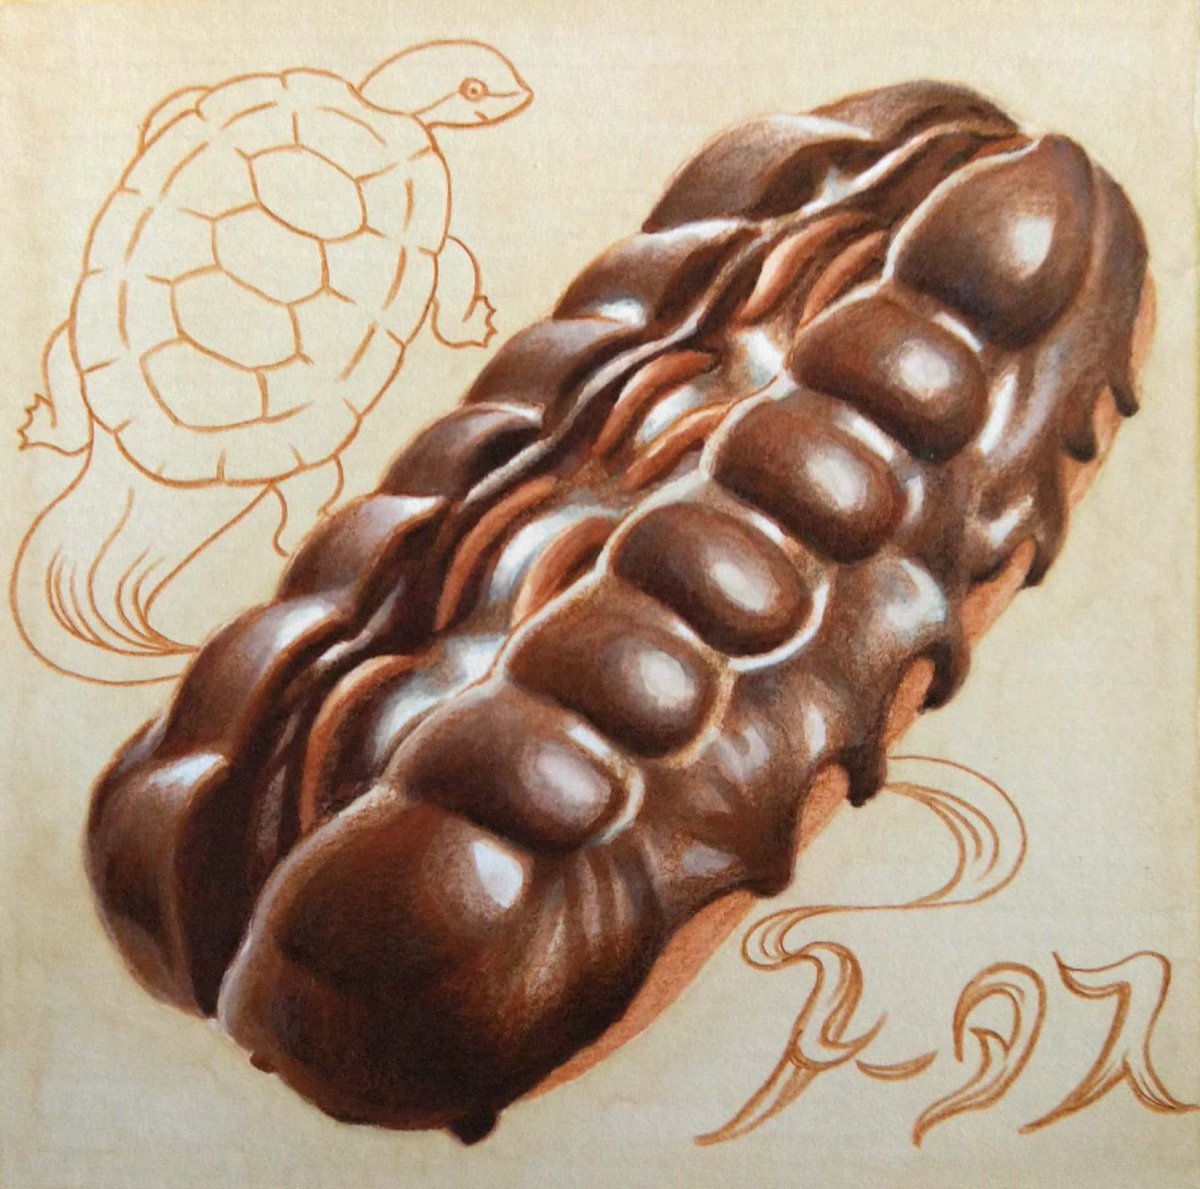 毎月12日は #パンの日 。千歳市のお菓子工房「もりもと」の「トータス」。当初もりもとは千歳でパン店として創業。半世紀以上のロングセラーと銘打たれたこの菓子パン、地元では「カメパン」の愛称で呼ばれているそうな🐢🥖
#田島ハルのくいしん簿 #朝日新聞 #北海道 #イラスト #食べ物イラスト 